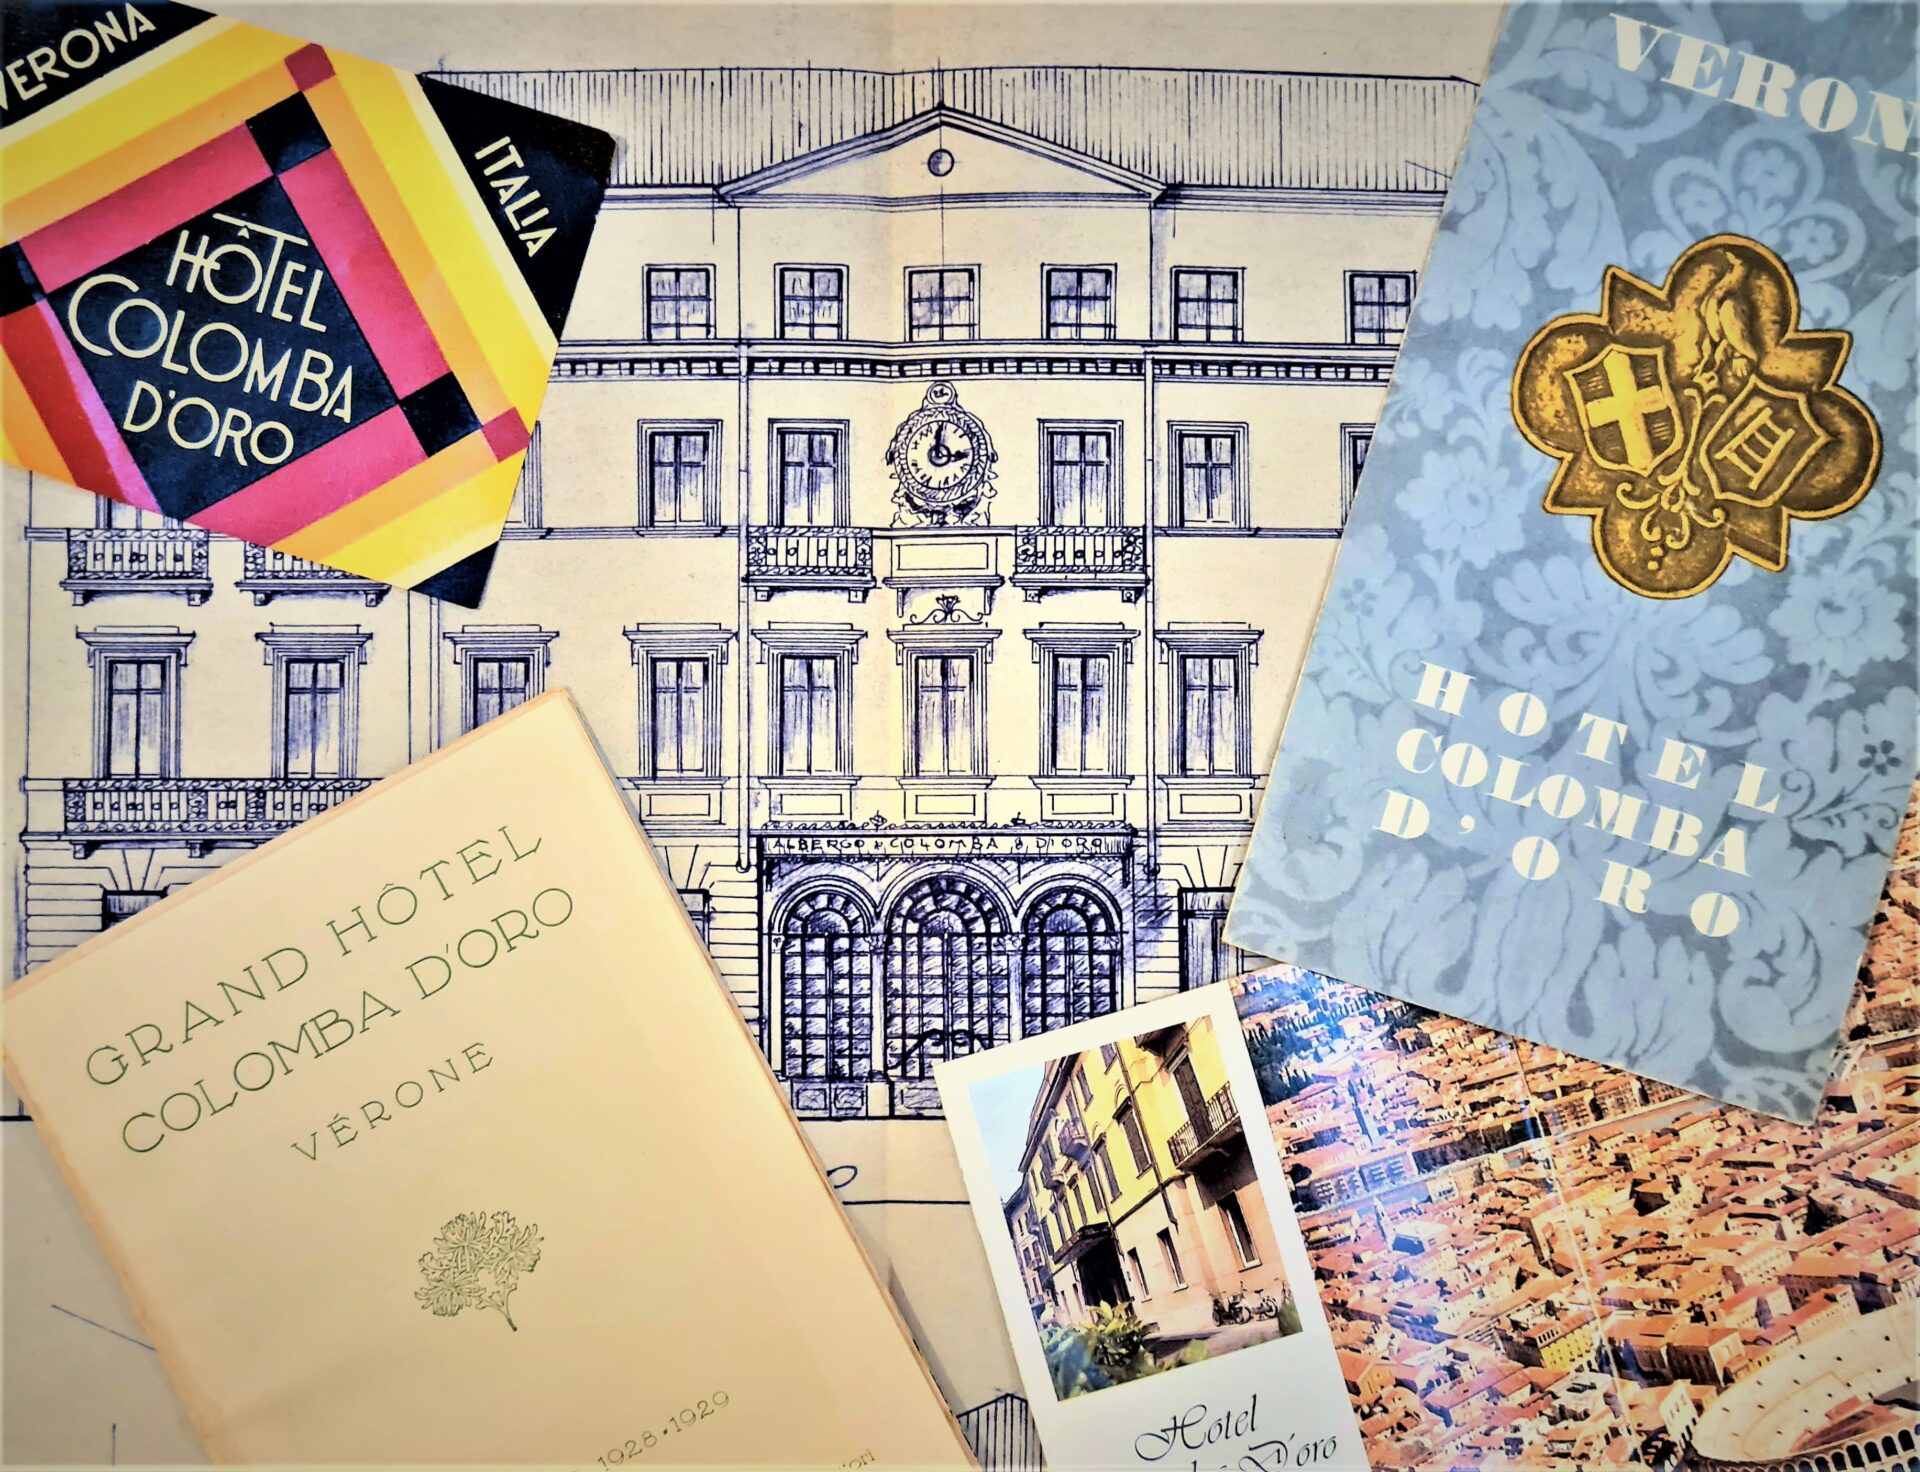 Stampe storica di Verona e dell'Hotel Colomba d'Oro